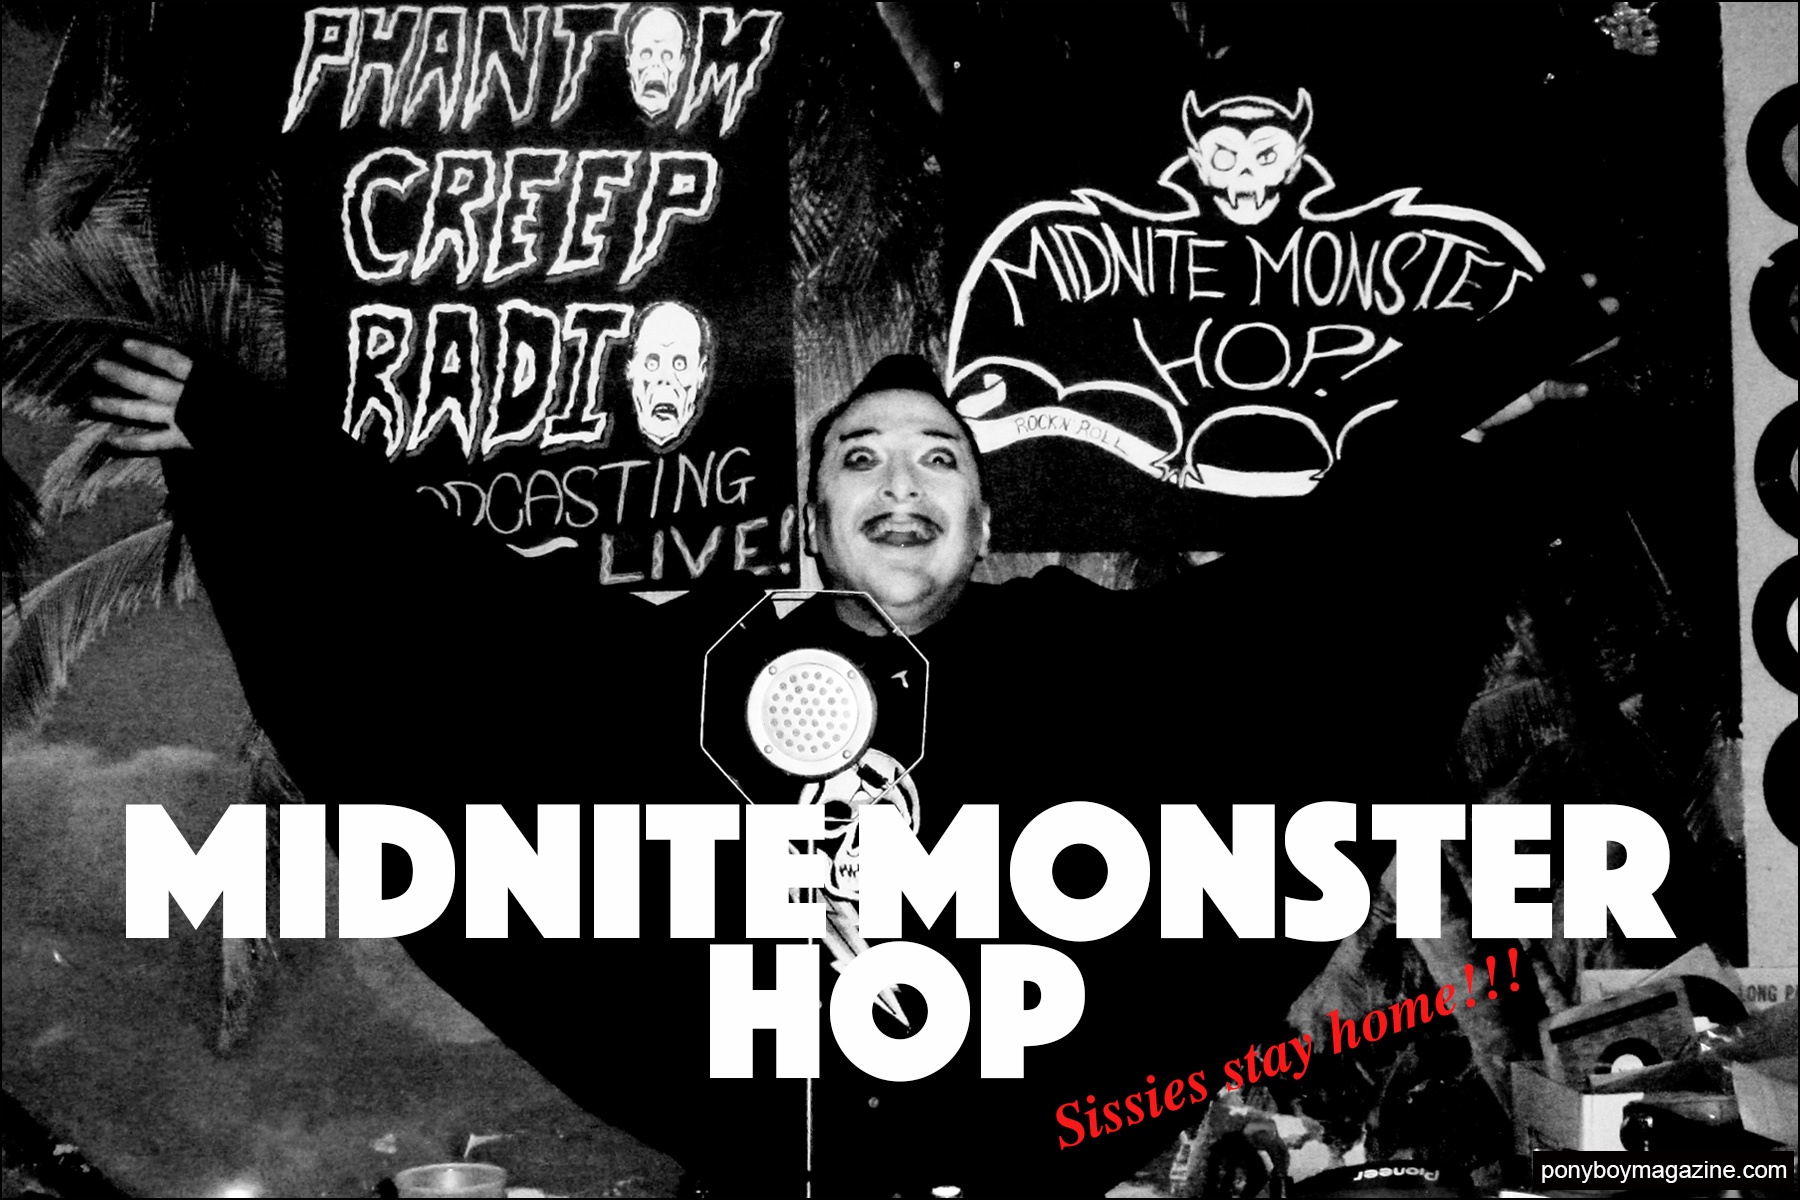 The Midnite Monster Hop party. Ponyboy magazine NY.